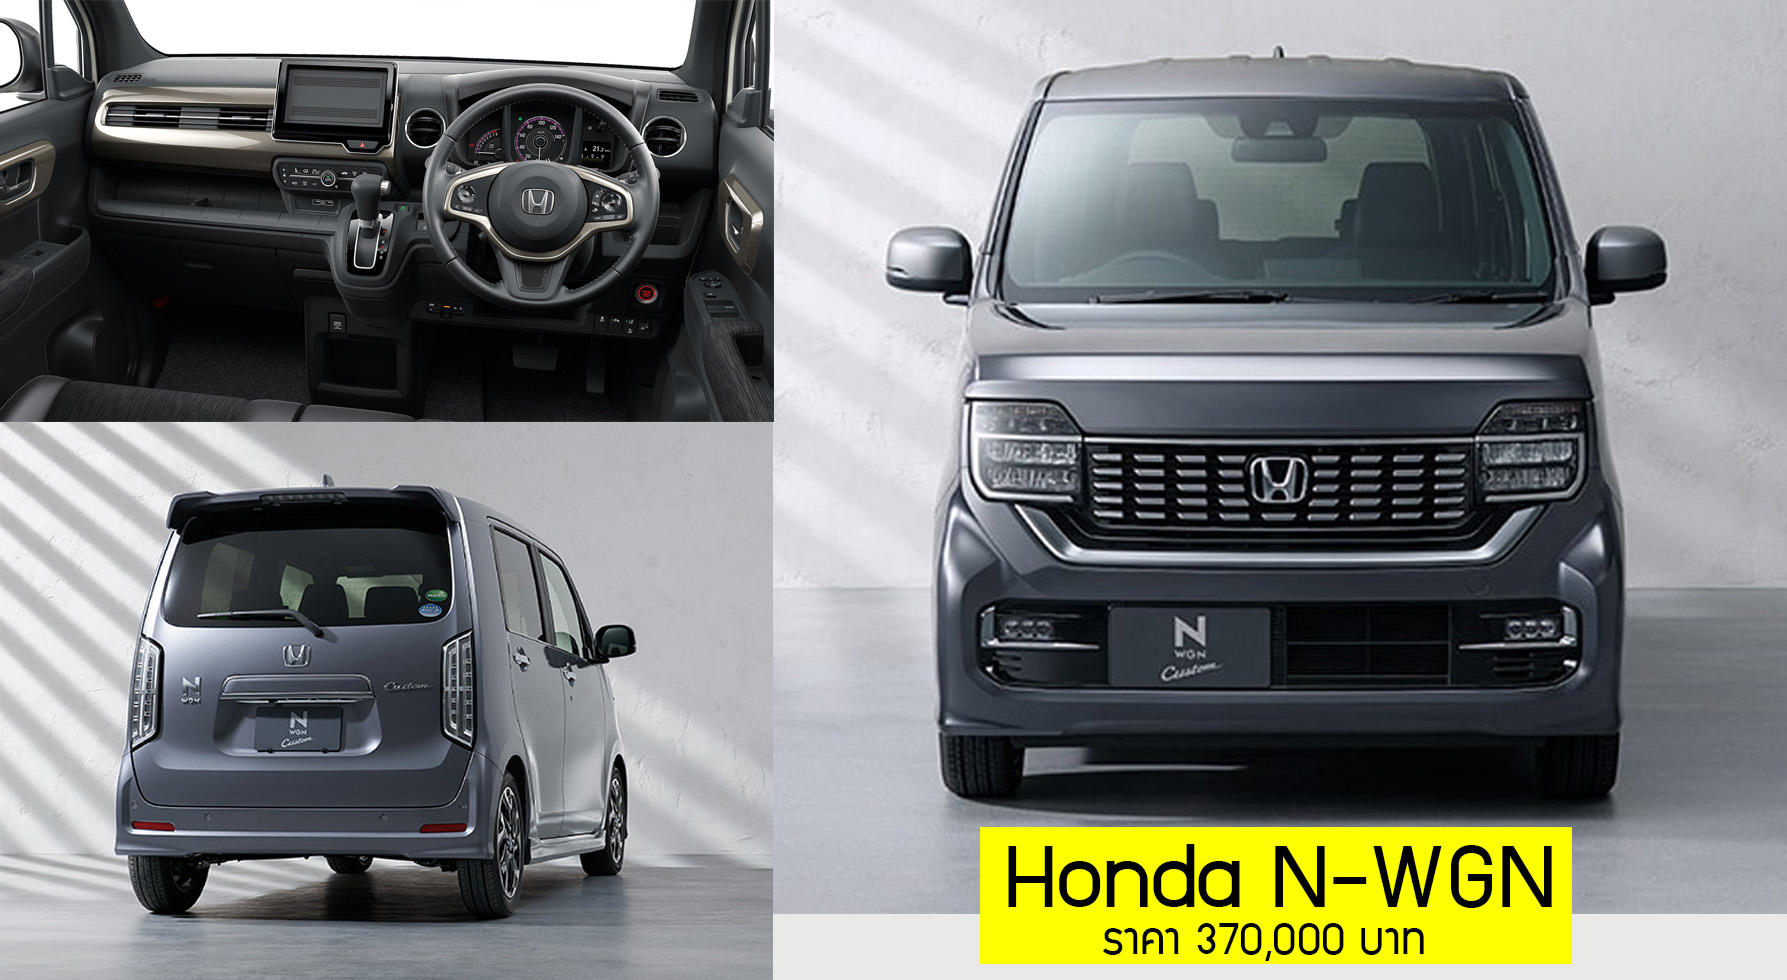 Honda N-WGN ราคา 370,000 บาท + เบนซิน 666 ซีซี 58 แรงม้า 23.2 กม/ลิตร ในญี่ปุ่น